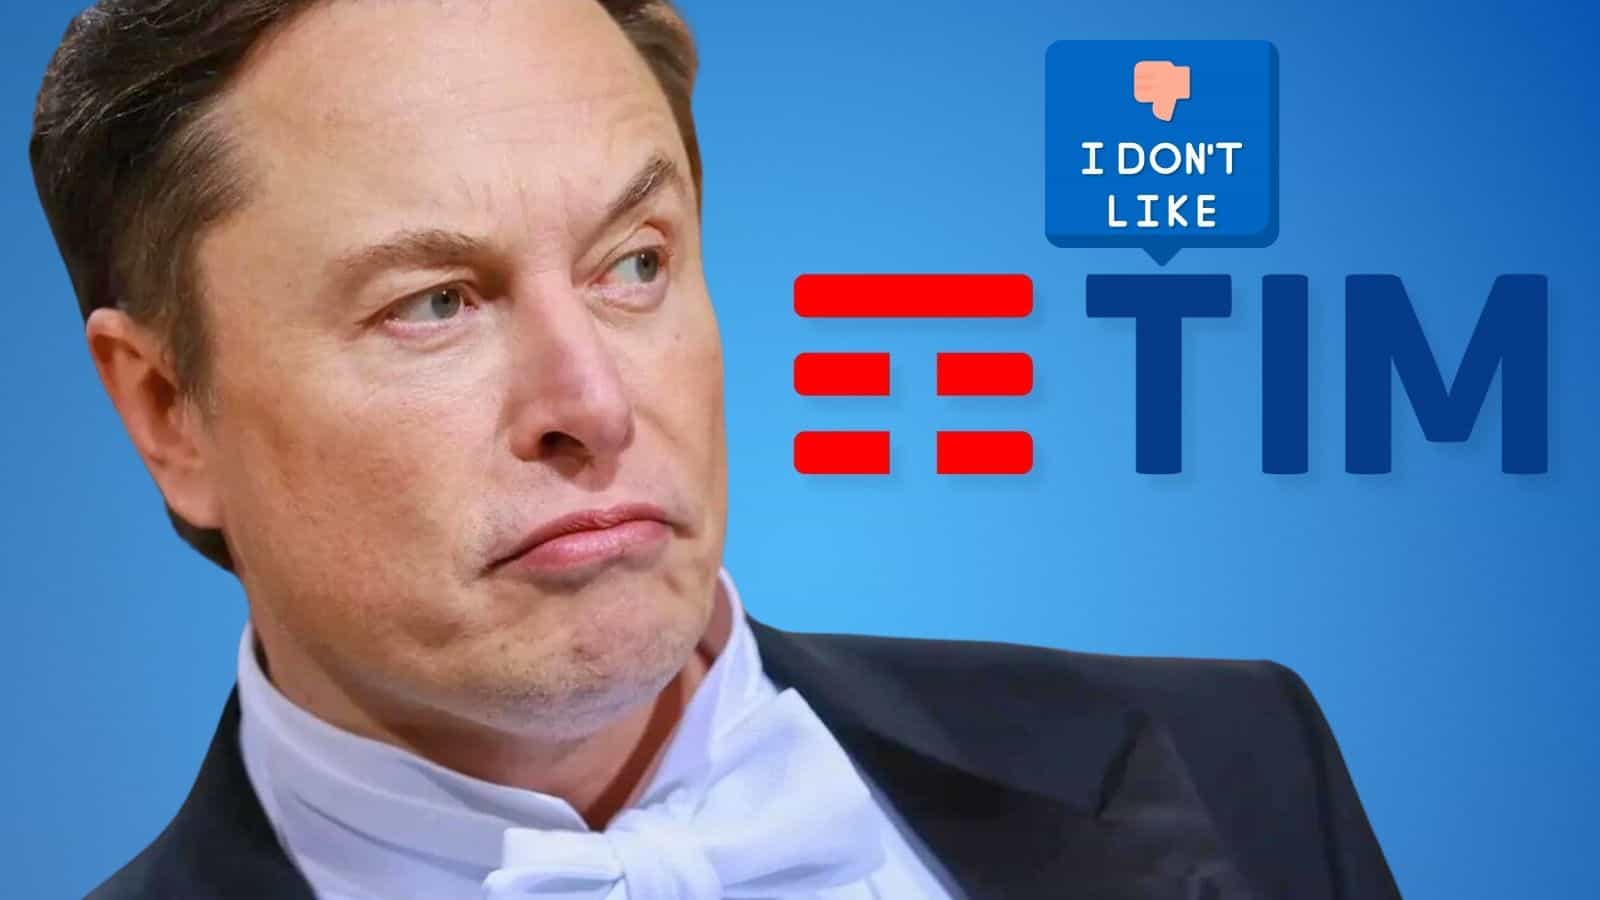 TIM accusata da Elon Musk: ostacolerebbe le comunicazioni in Italia